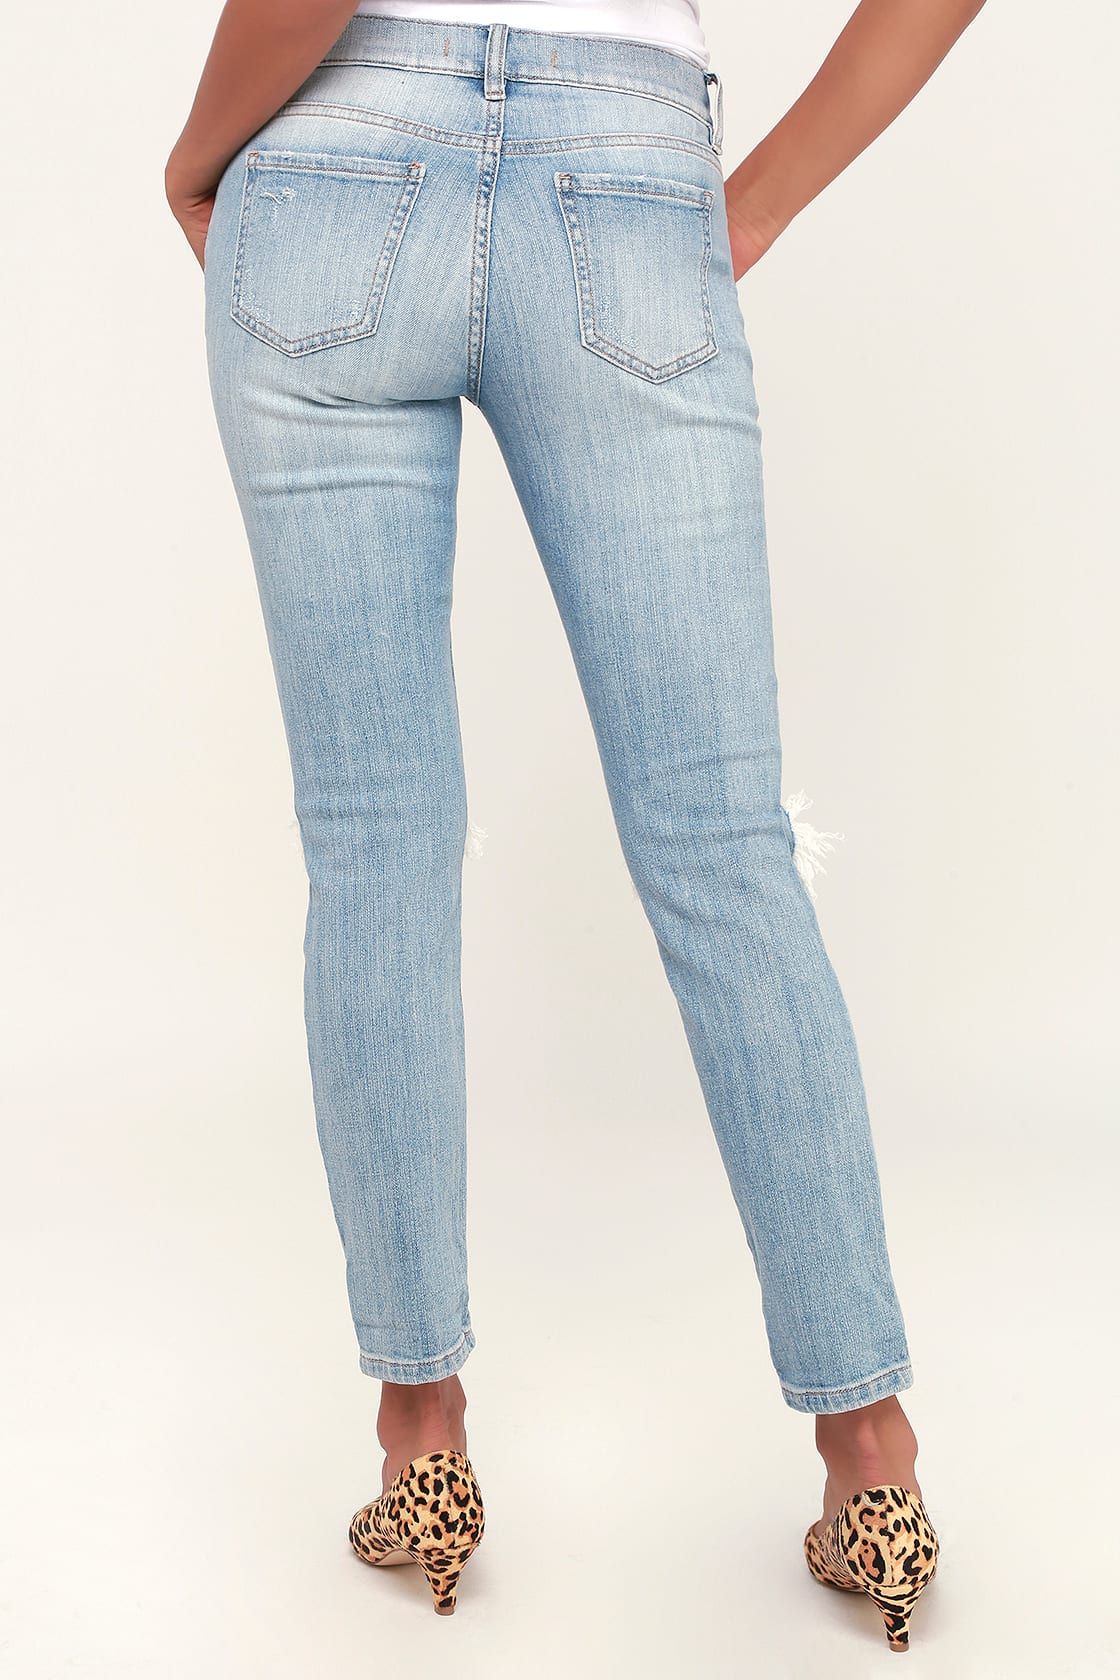 Sasha Light Blue Distressed Low-Rise Skinny Jeans | Lulus (US)